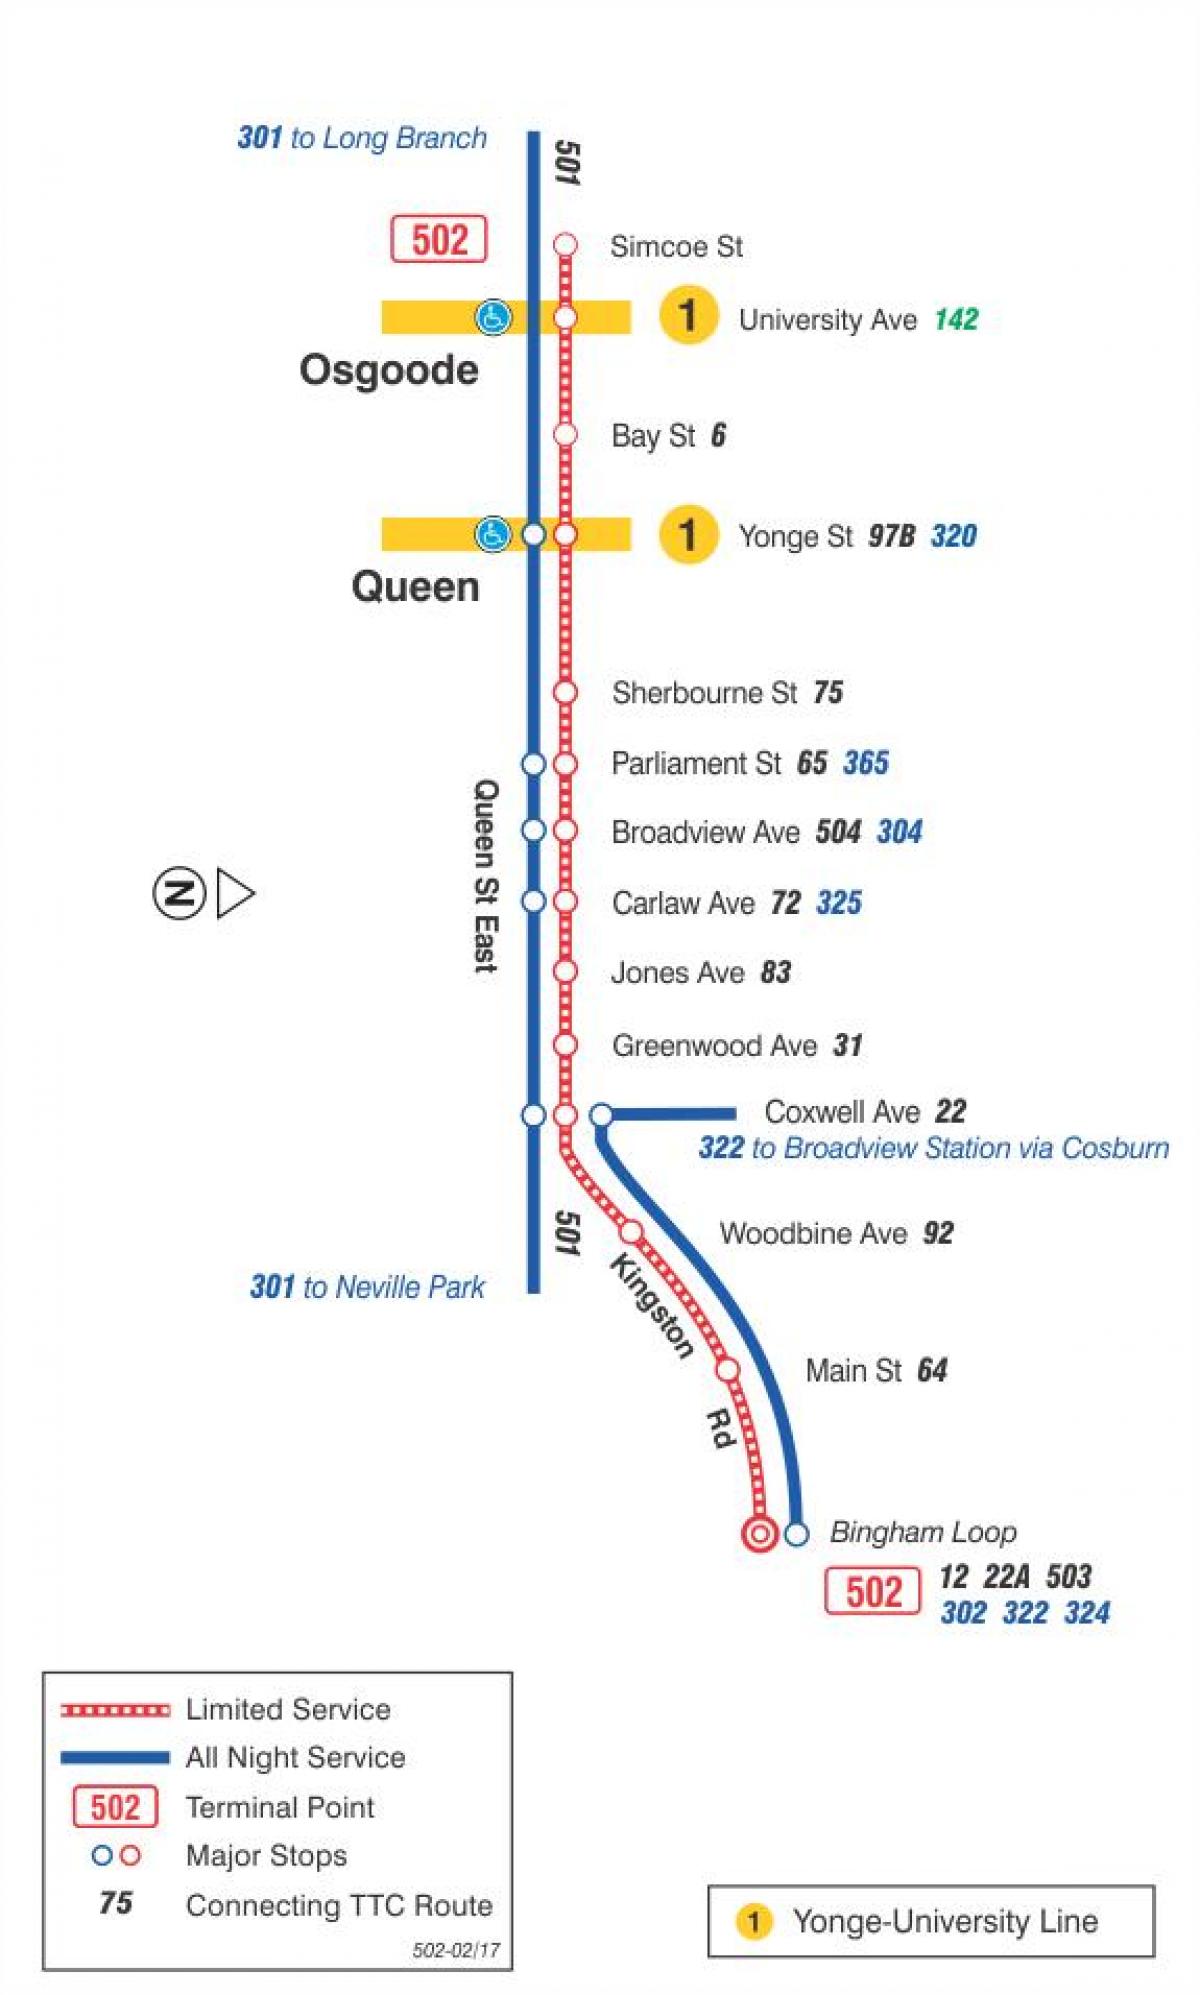 Anzeigen der Straßenbahn-Linie 502 Downtowner